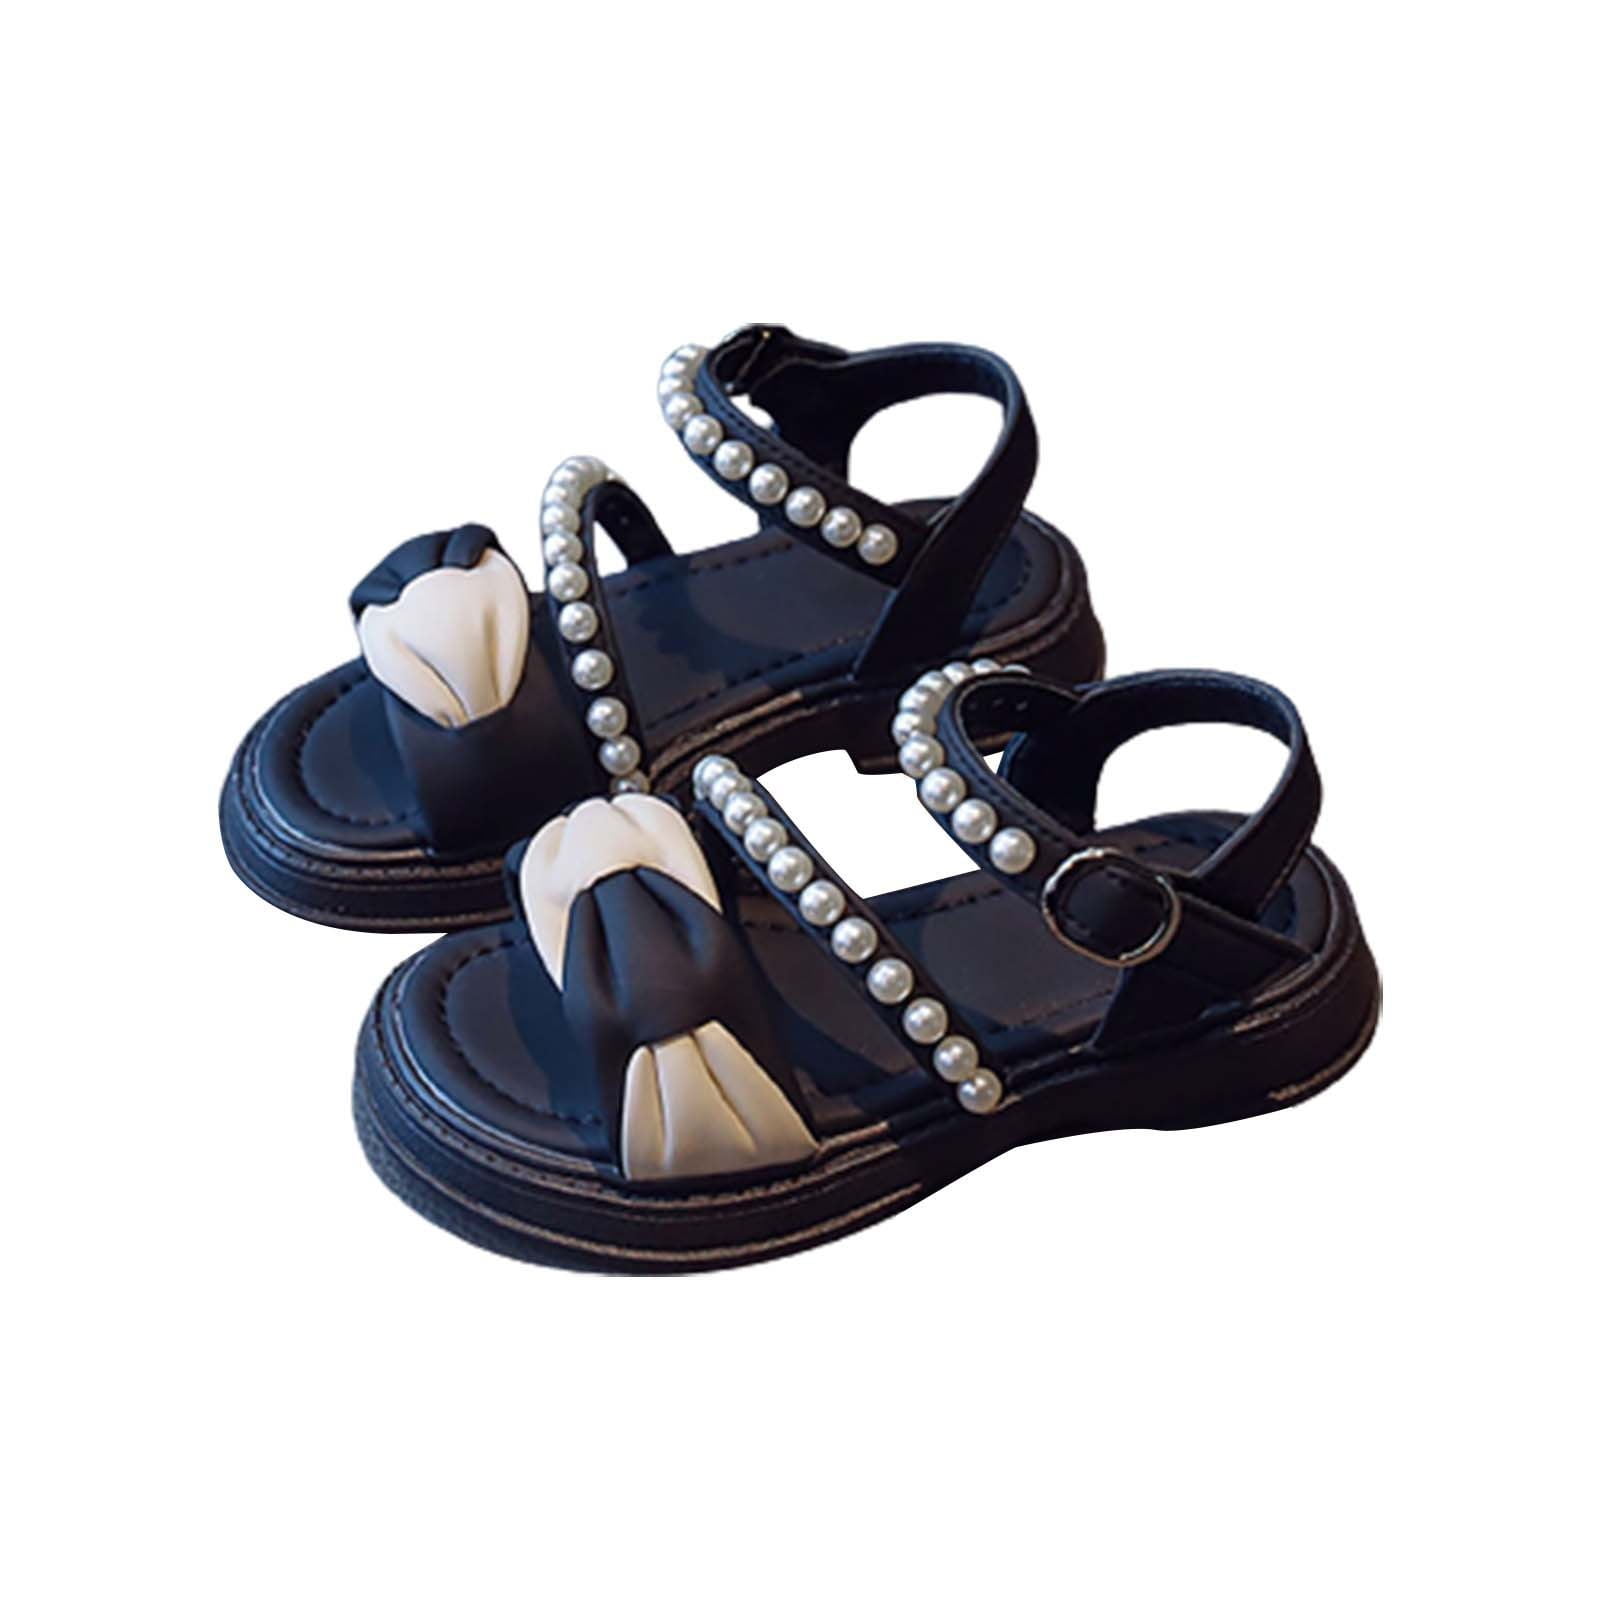 PEASKJP Flat Sandals Children Girls Sandals Princess Open-toed Soft ...